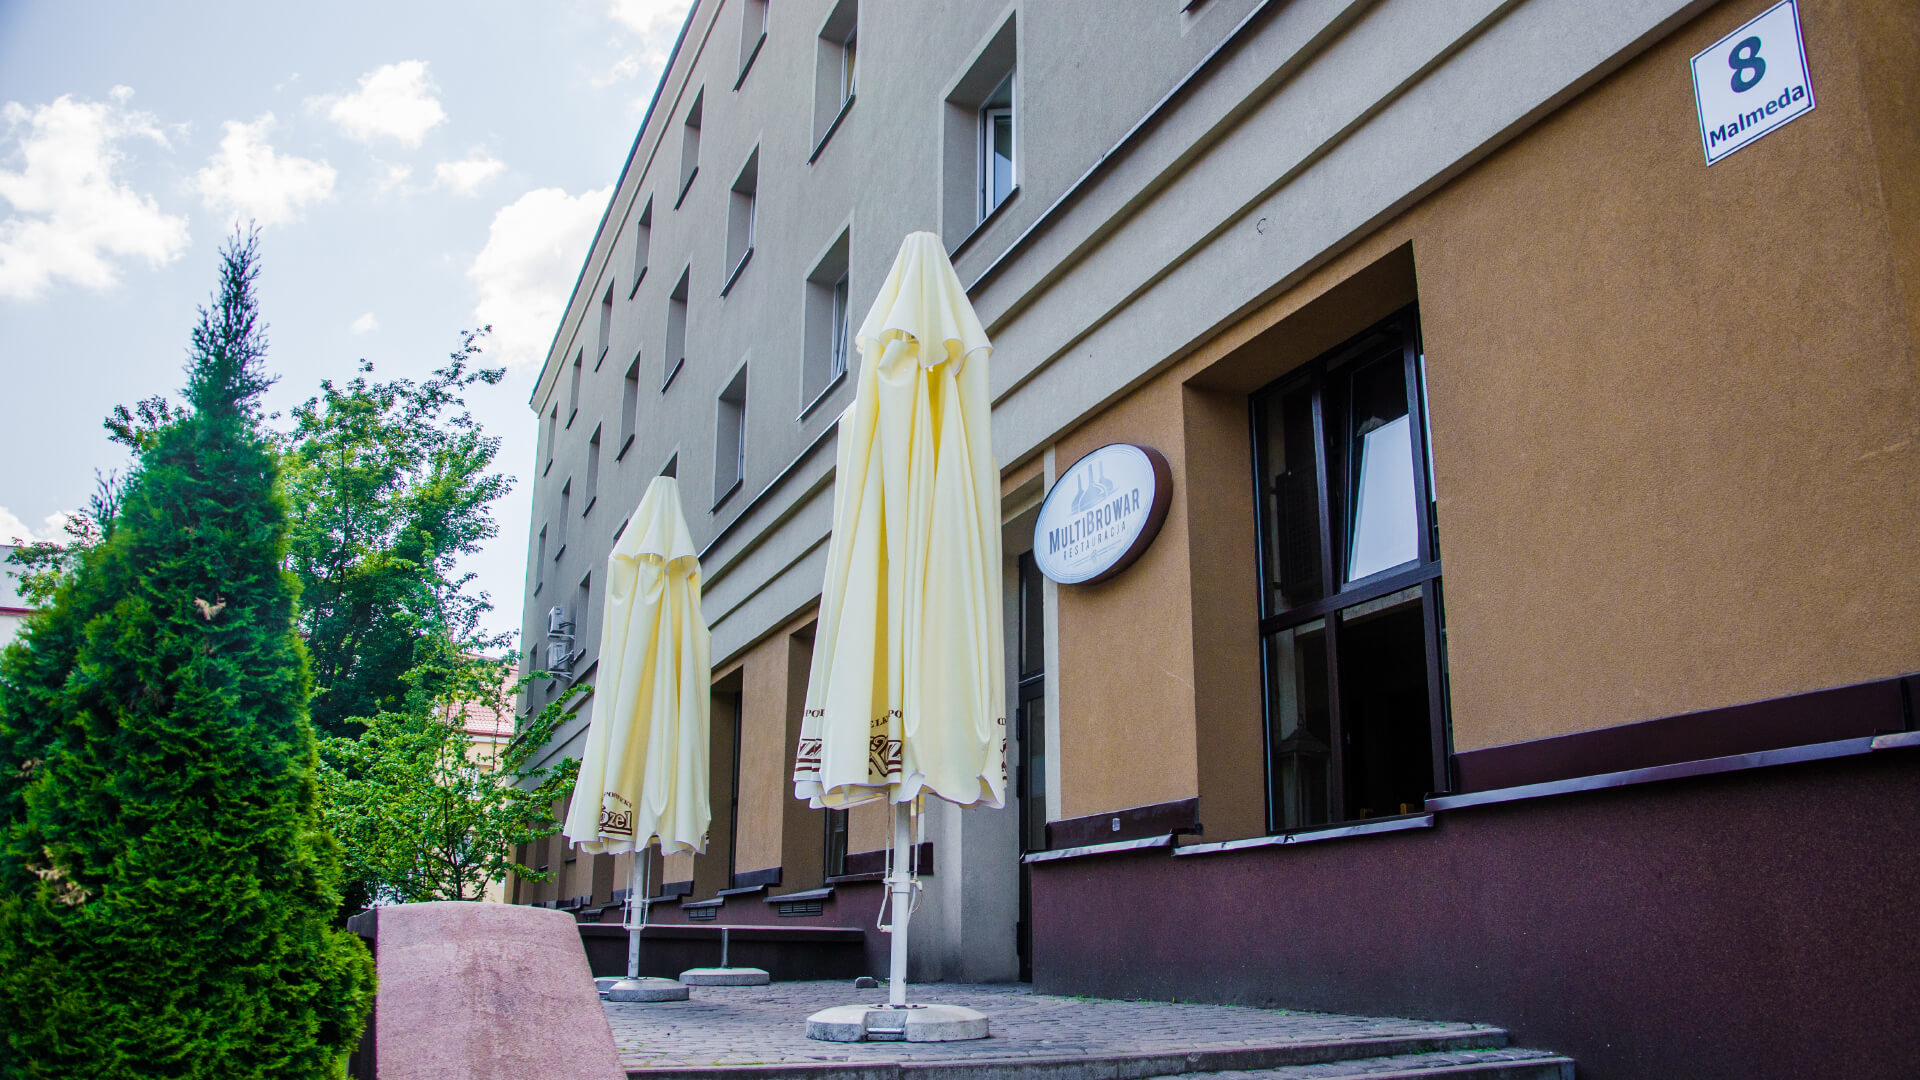 Malmeda City Centre Apartment (Białystok)